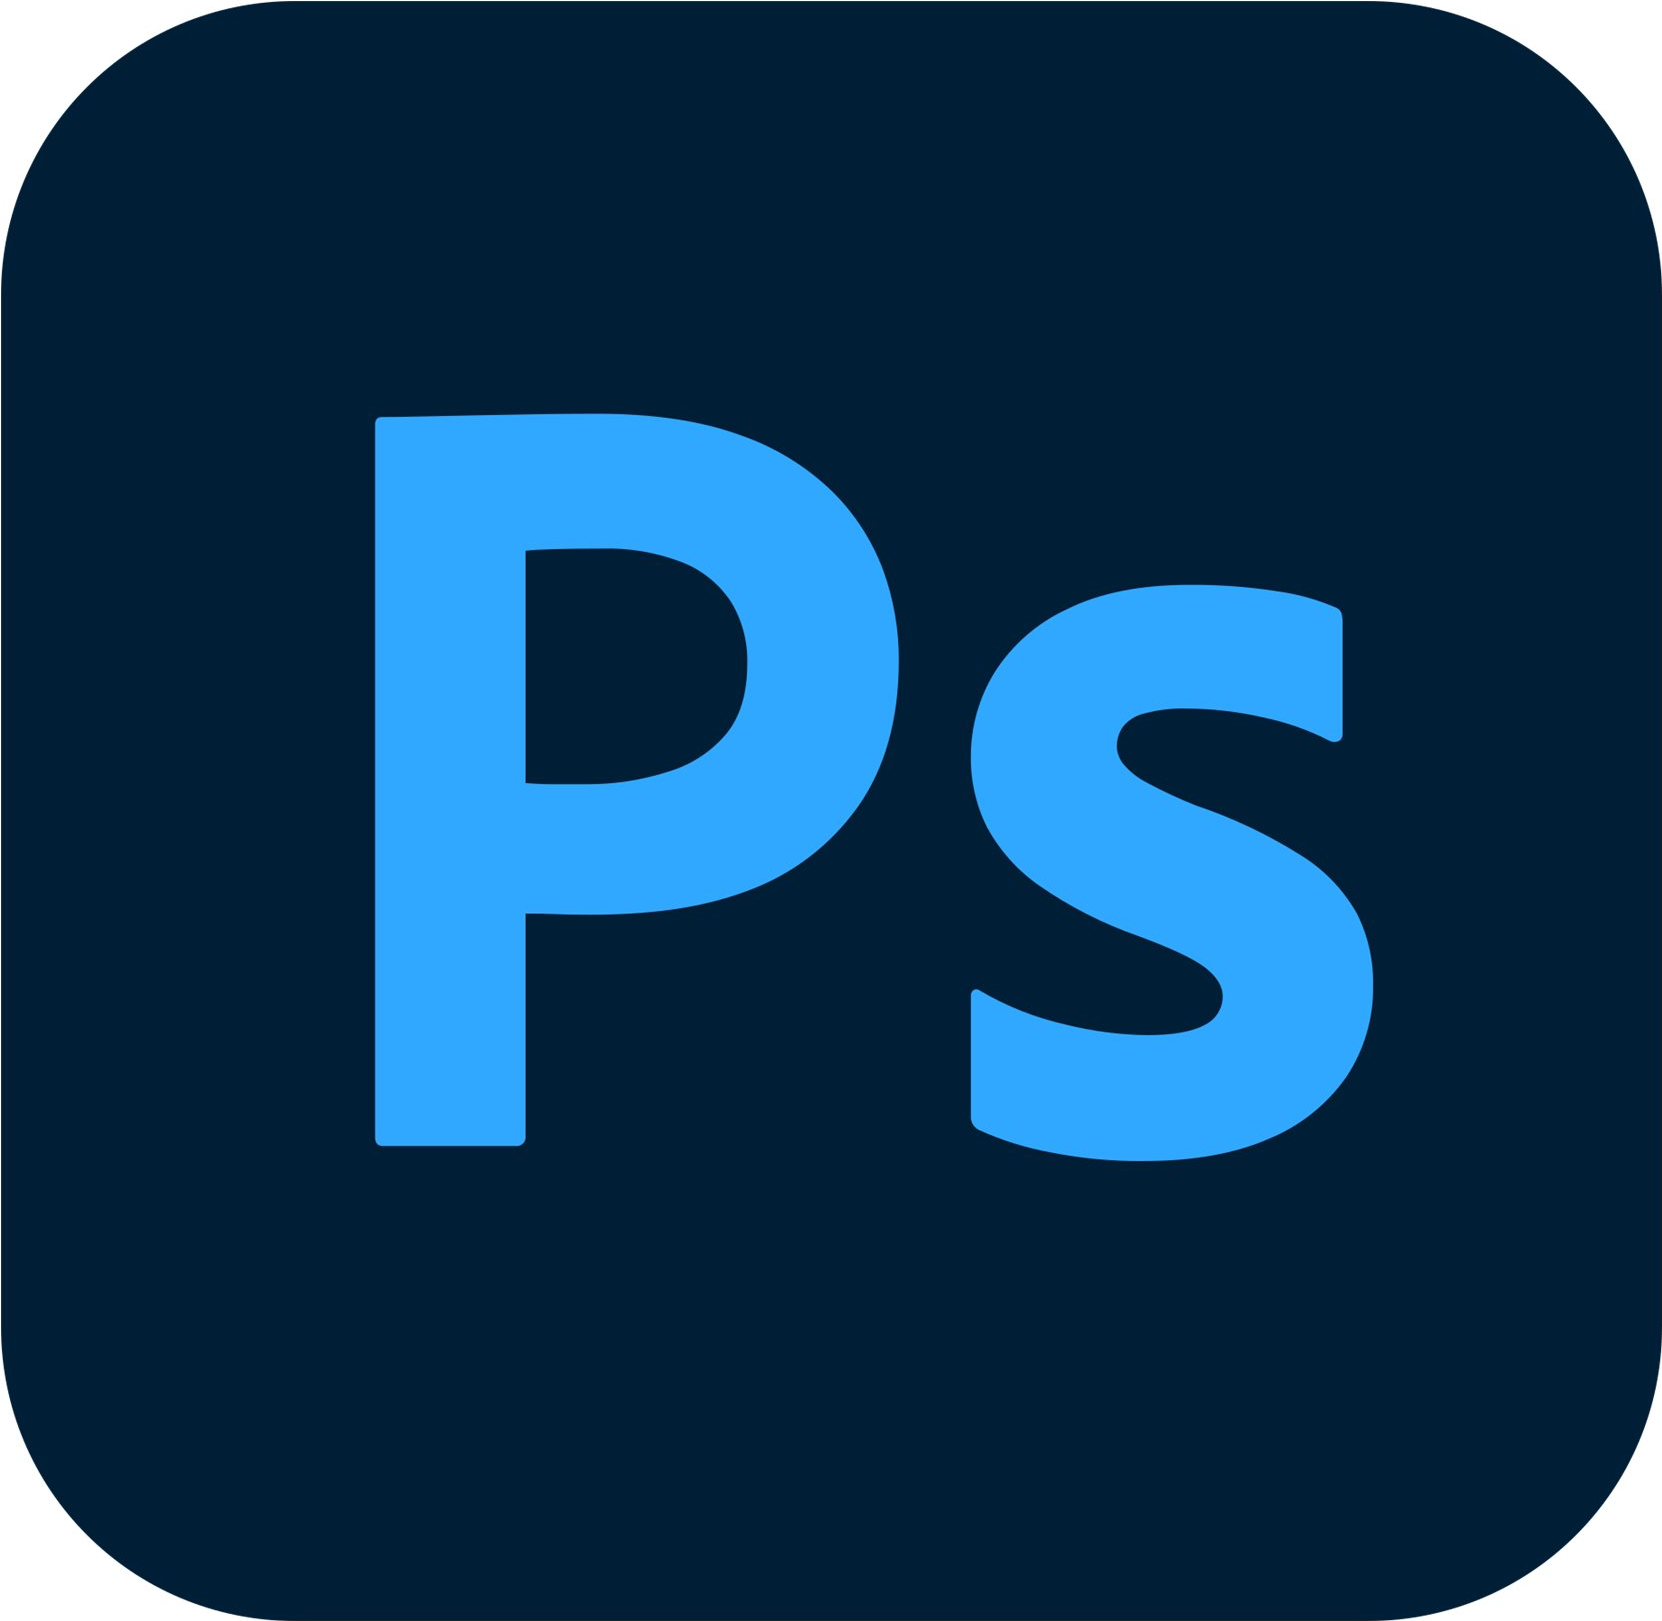 Adobe Photoshop CC for Enterprise - Abonnement neu - 1 Benutzer - Value Incentive Plan - Stufe 1 (1-9) - Win, Mac - Multi European Languages von Adobe